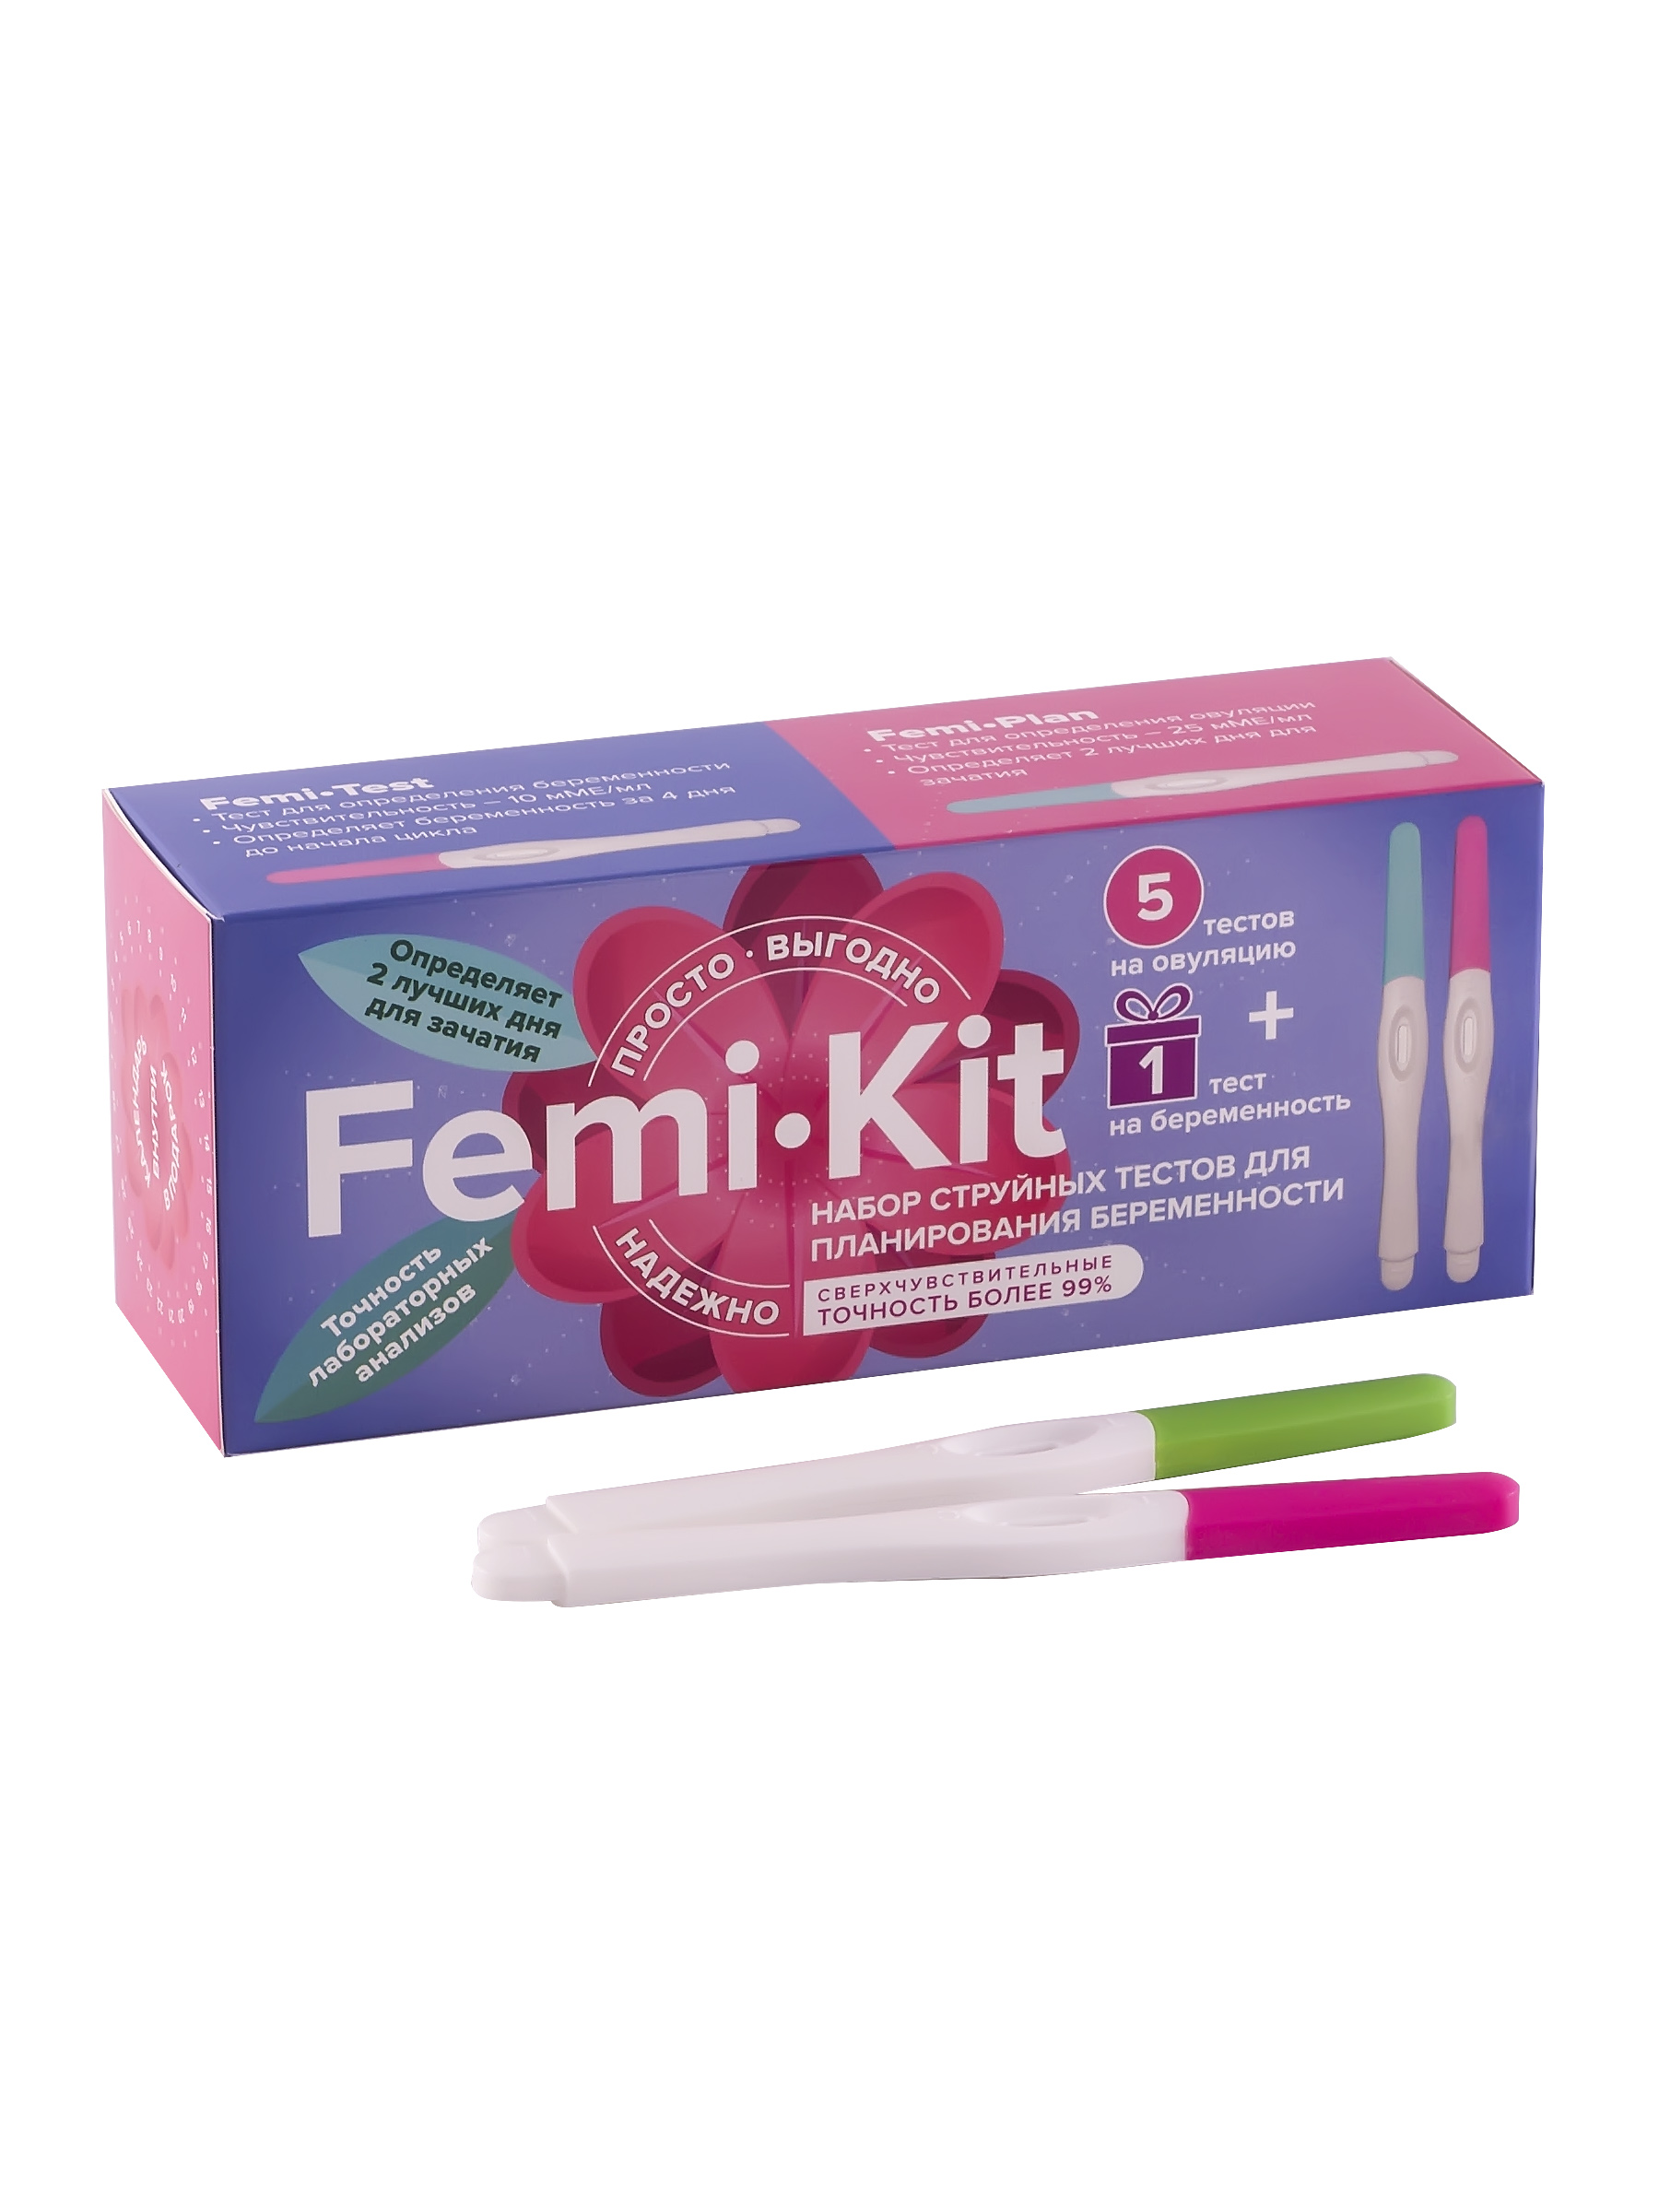 Купить FEMiKIT Набор струйных тестов для определения овуляции и беременности, 5шт+1шт. NEW, Набор струйных тестов FEMiKIT для определения овуляции и беременности, 5шт+1шт/0403-015